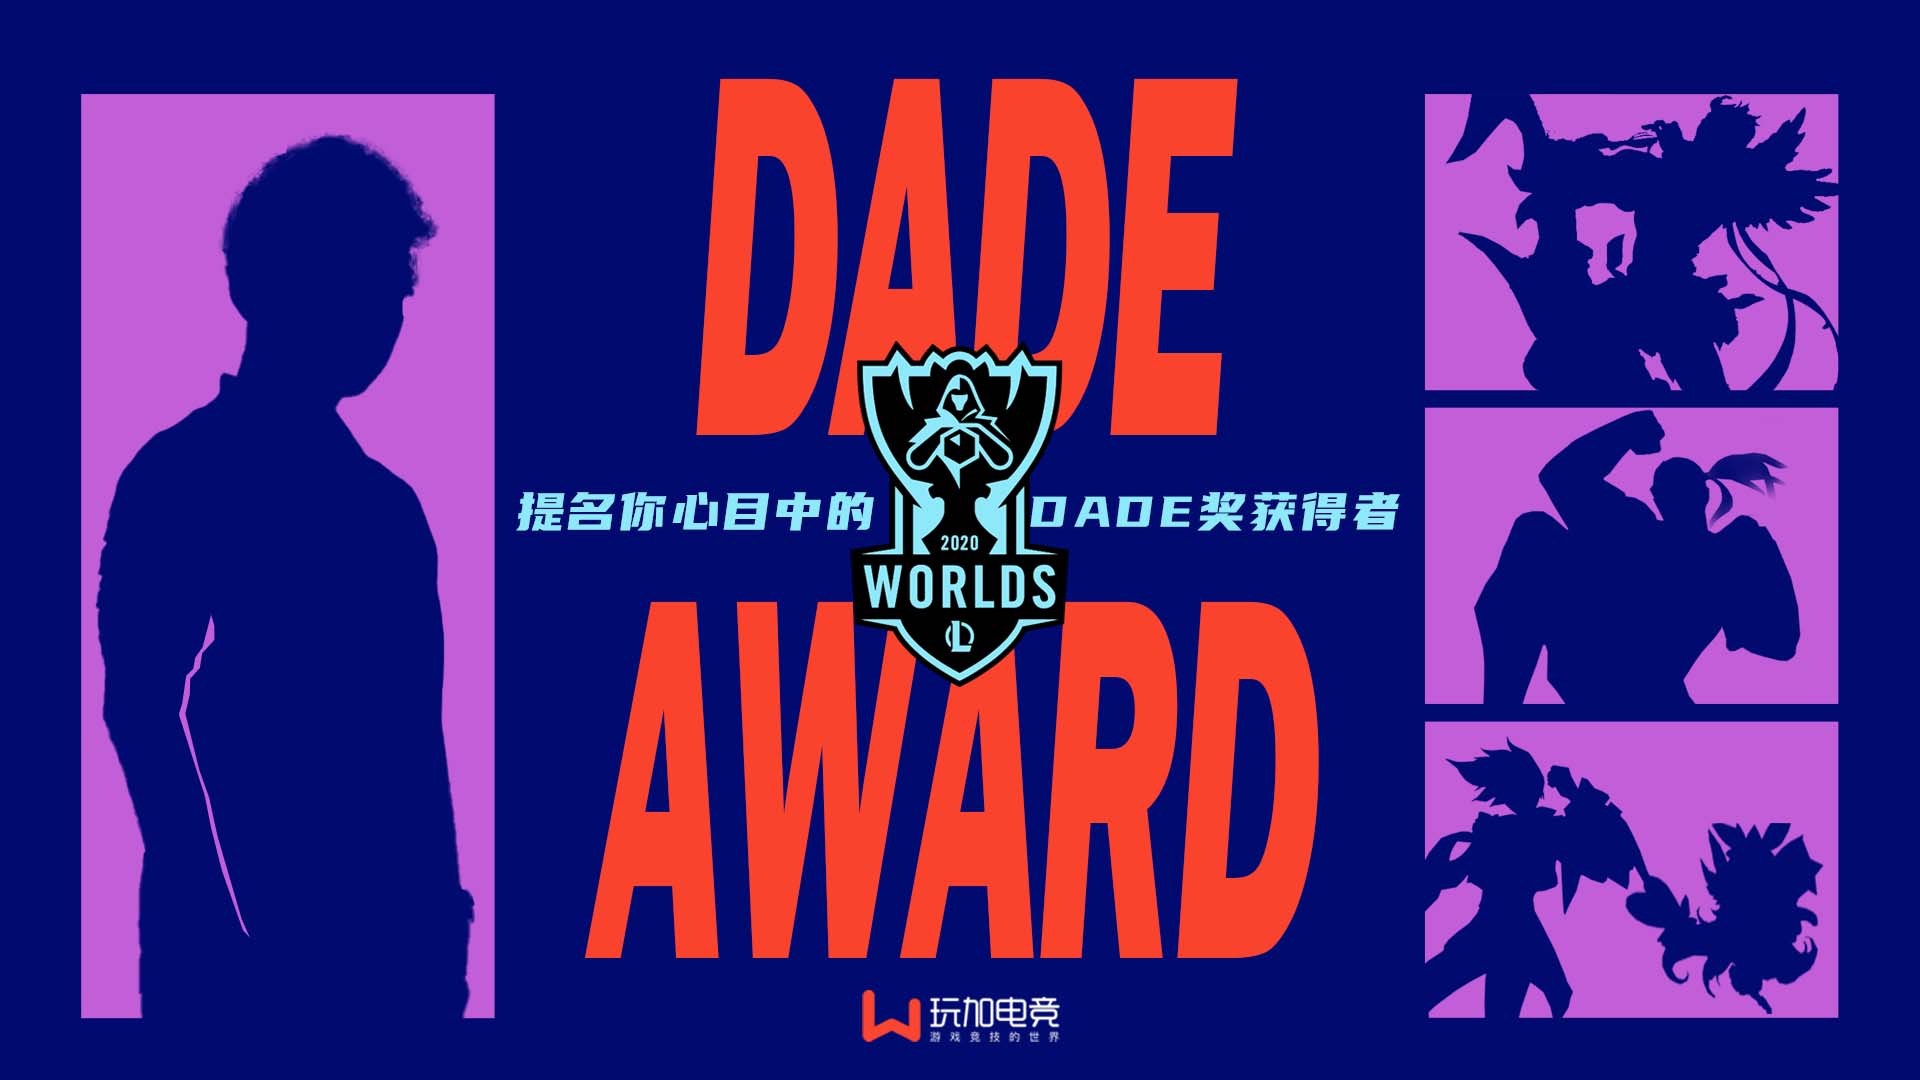 [已开奖] 你觉得谁是本届世界赛的Dade奖获得者？